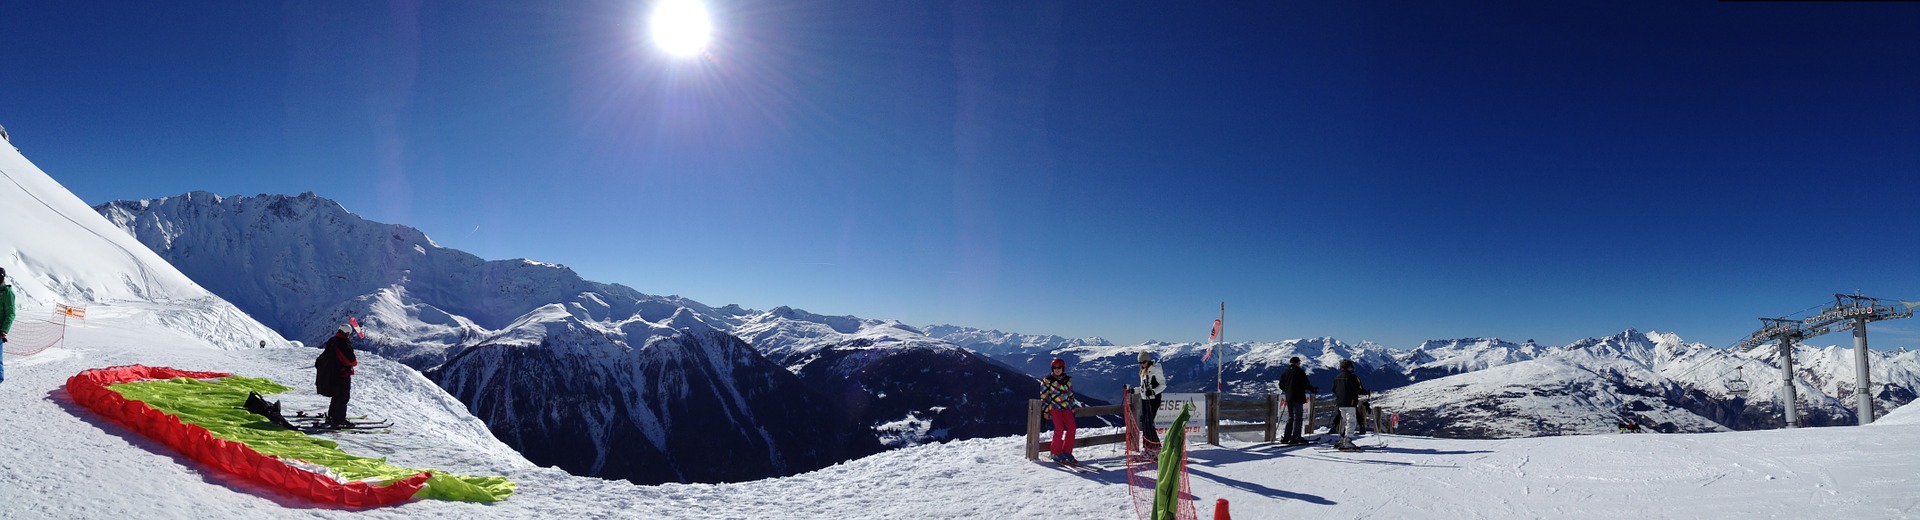 Französische Alpen - Frankreich Skifahren ab 159,00€ die Woche